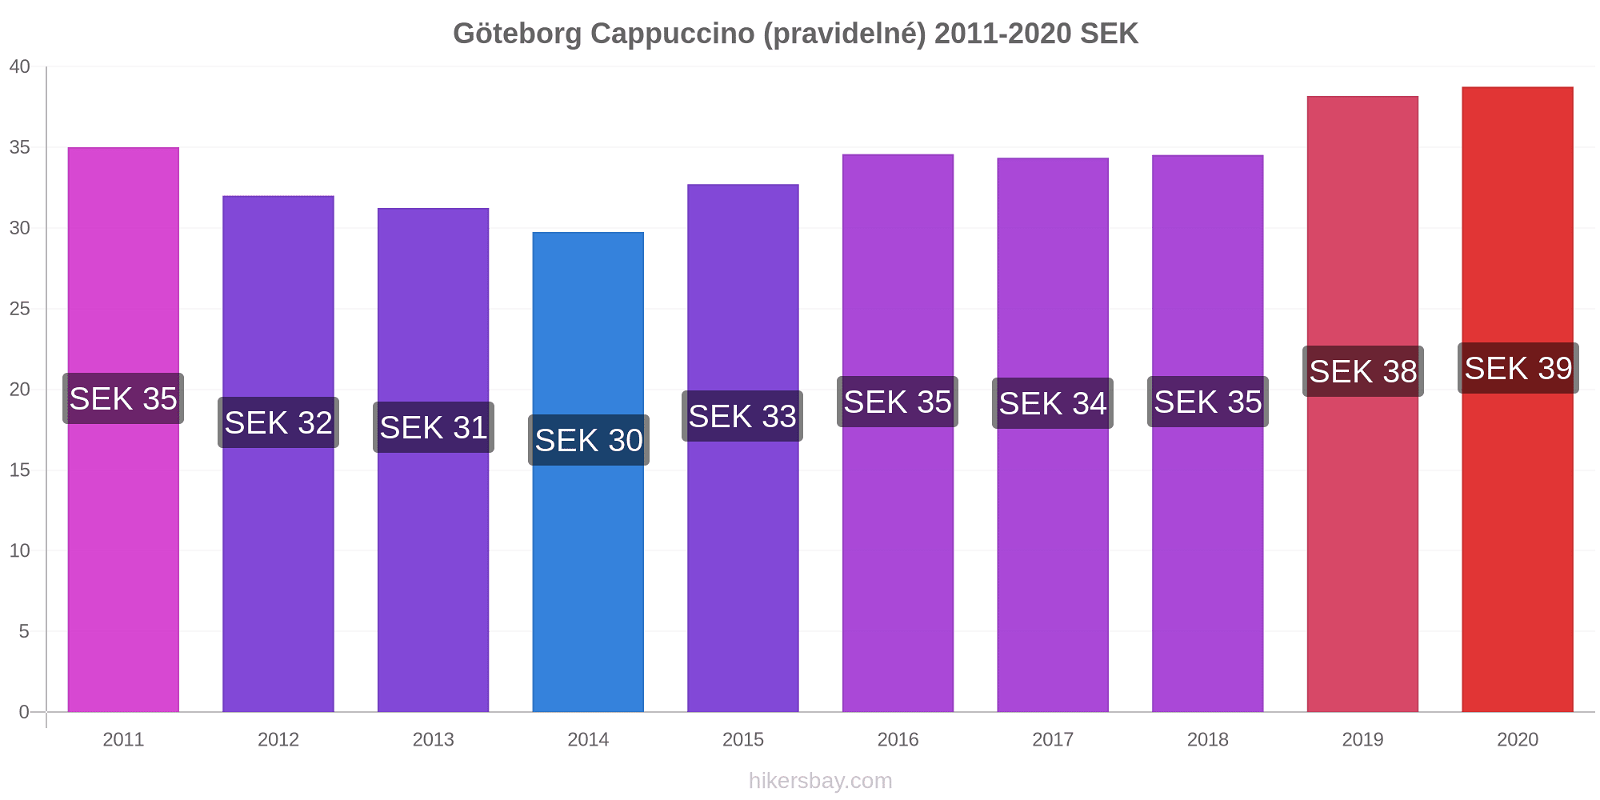 Göteborg změny cen Cappuccino (pravidelné) hikersbay.com